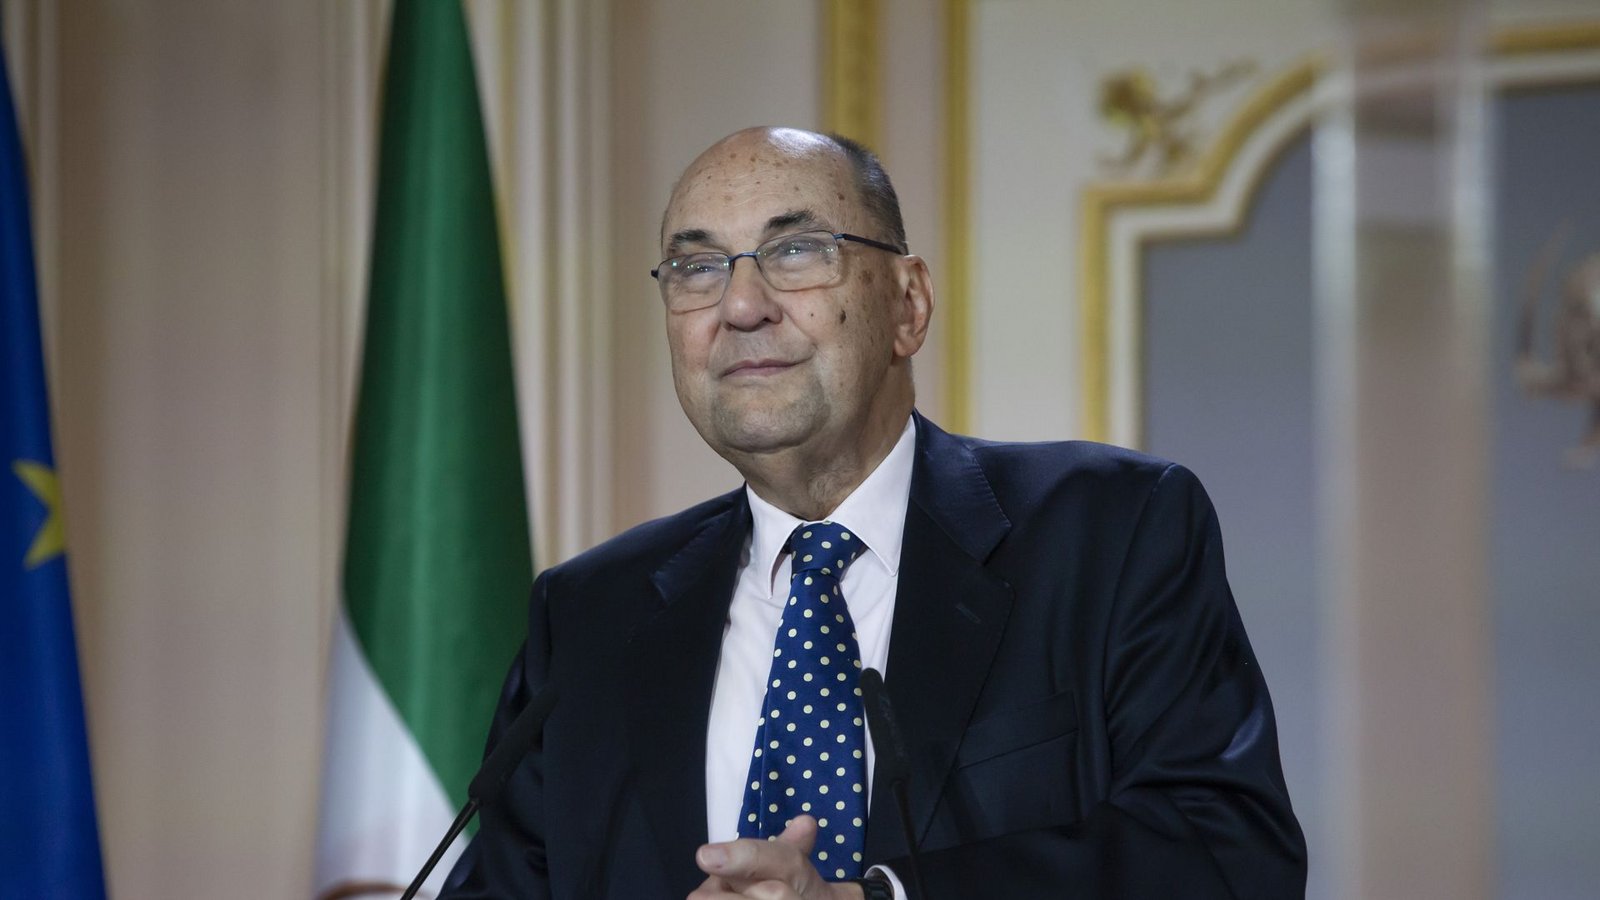 Alejo Vidal-Quadras ist seit Jahrzehnten ein lauter Kritiker des Mullah-Regimes. Die Spuren des Attentats sind in seinem Gesicht leicht zu sehen.Foto: oh/Siavosh Hosseini